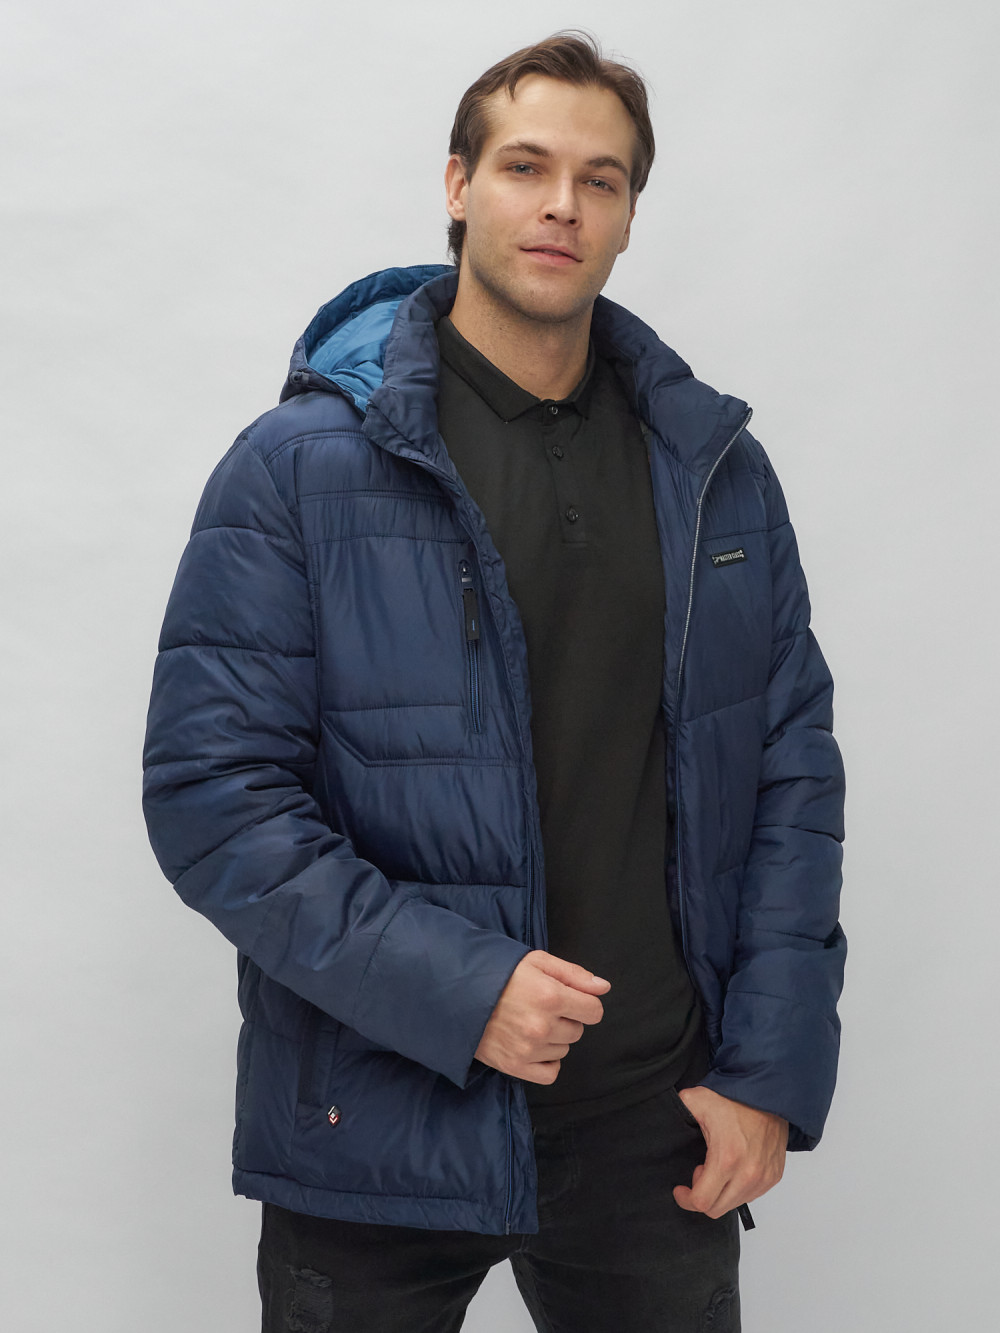 Купить куртку мужскую спортивную весеннюю оптом от производителя недорого в Москве 62190TS 1